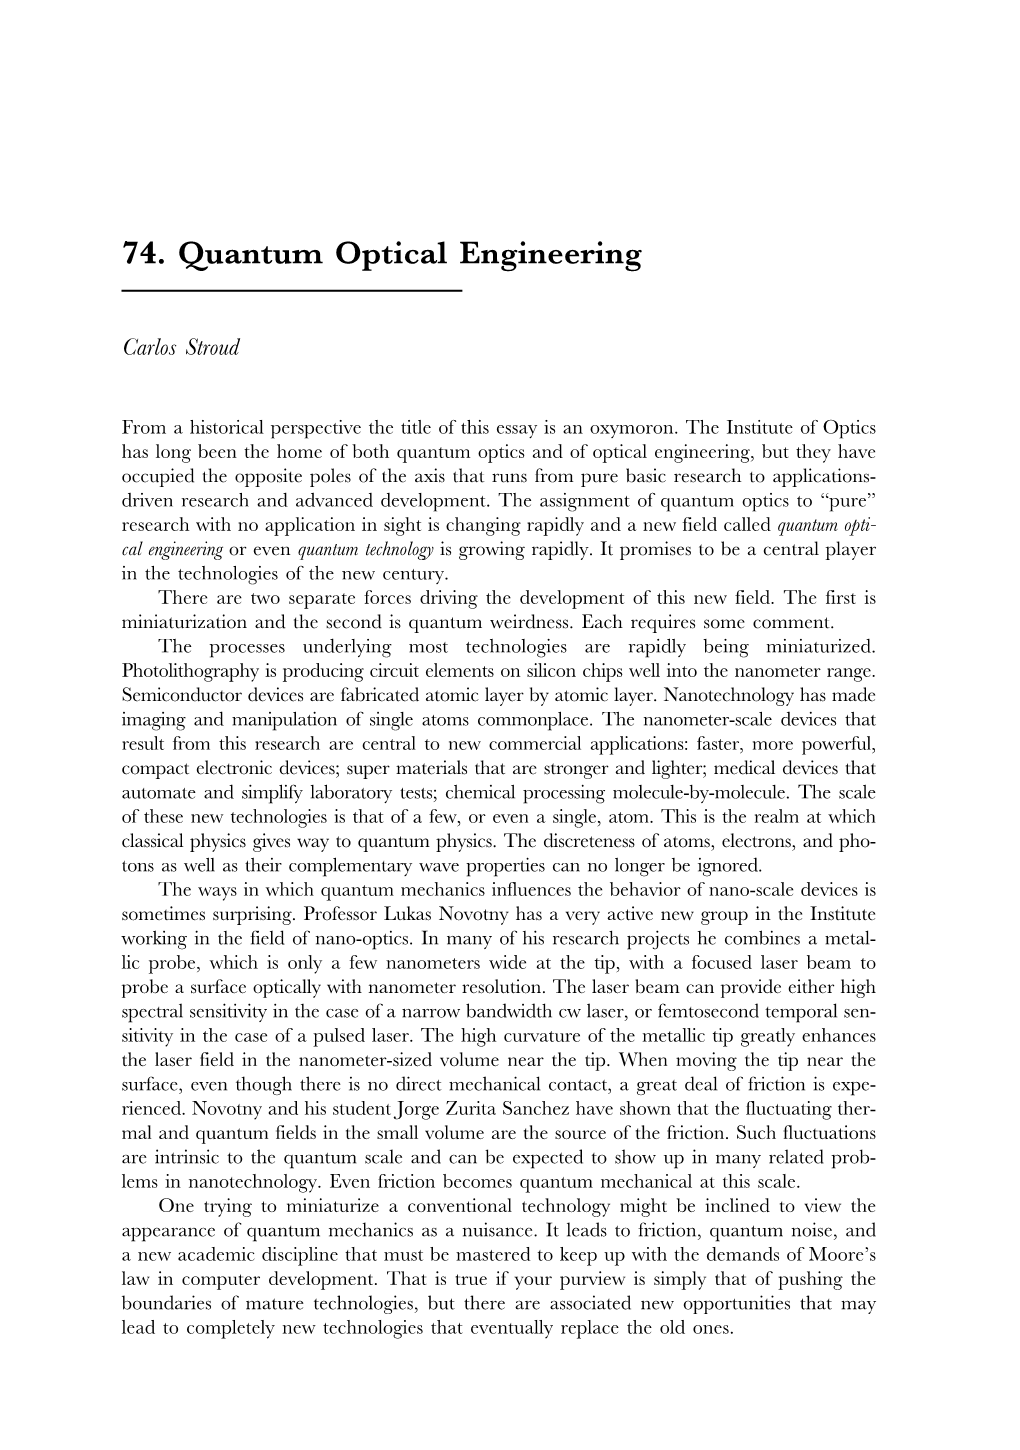 Quantum Optical Engineering